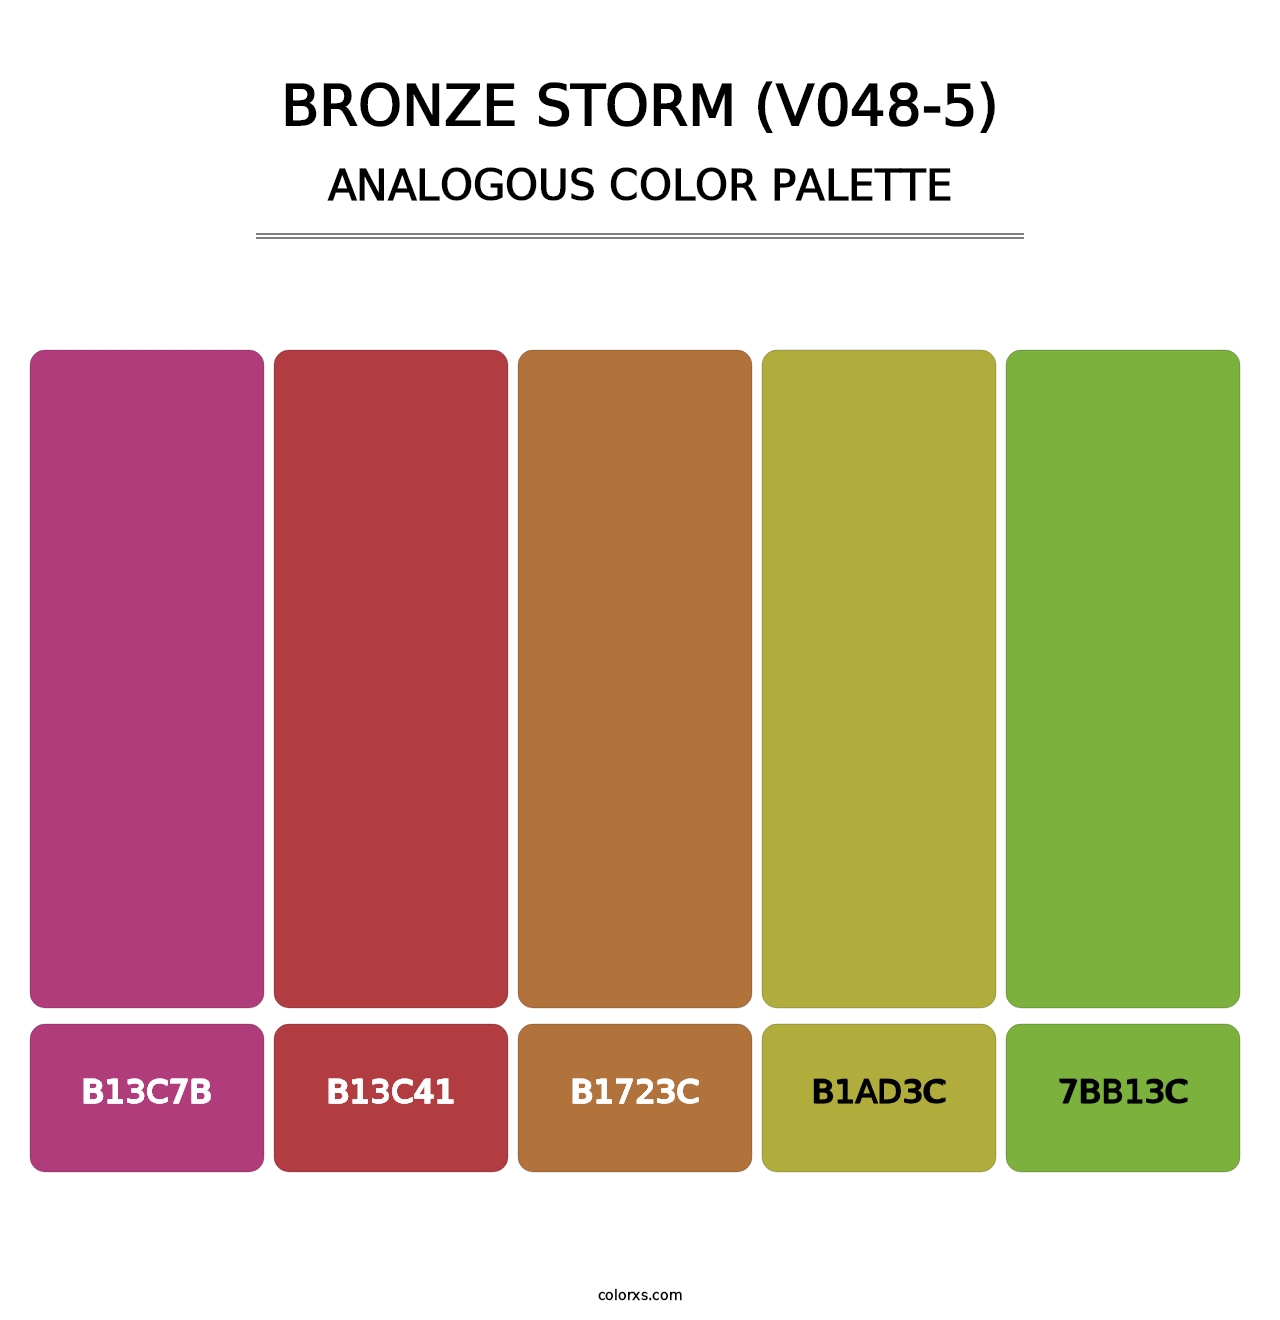 Bronze Storm (V048-5) - Analogous Color Palette